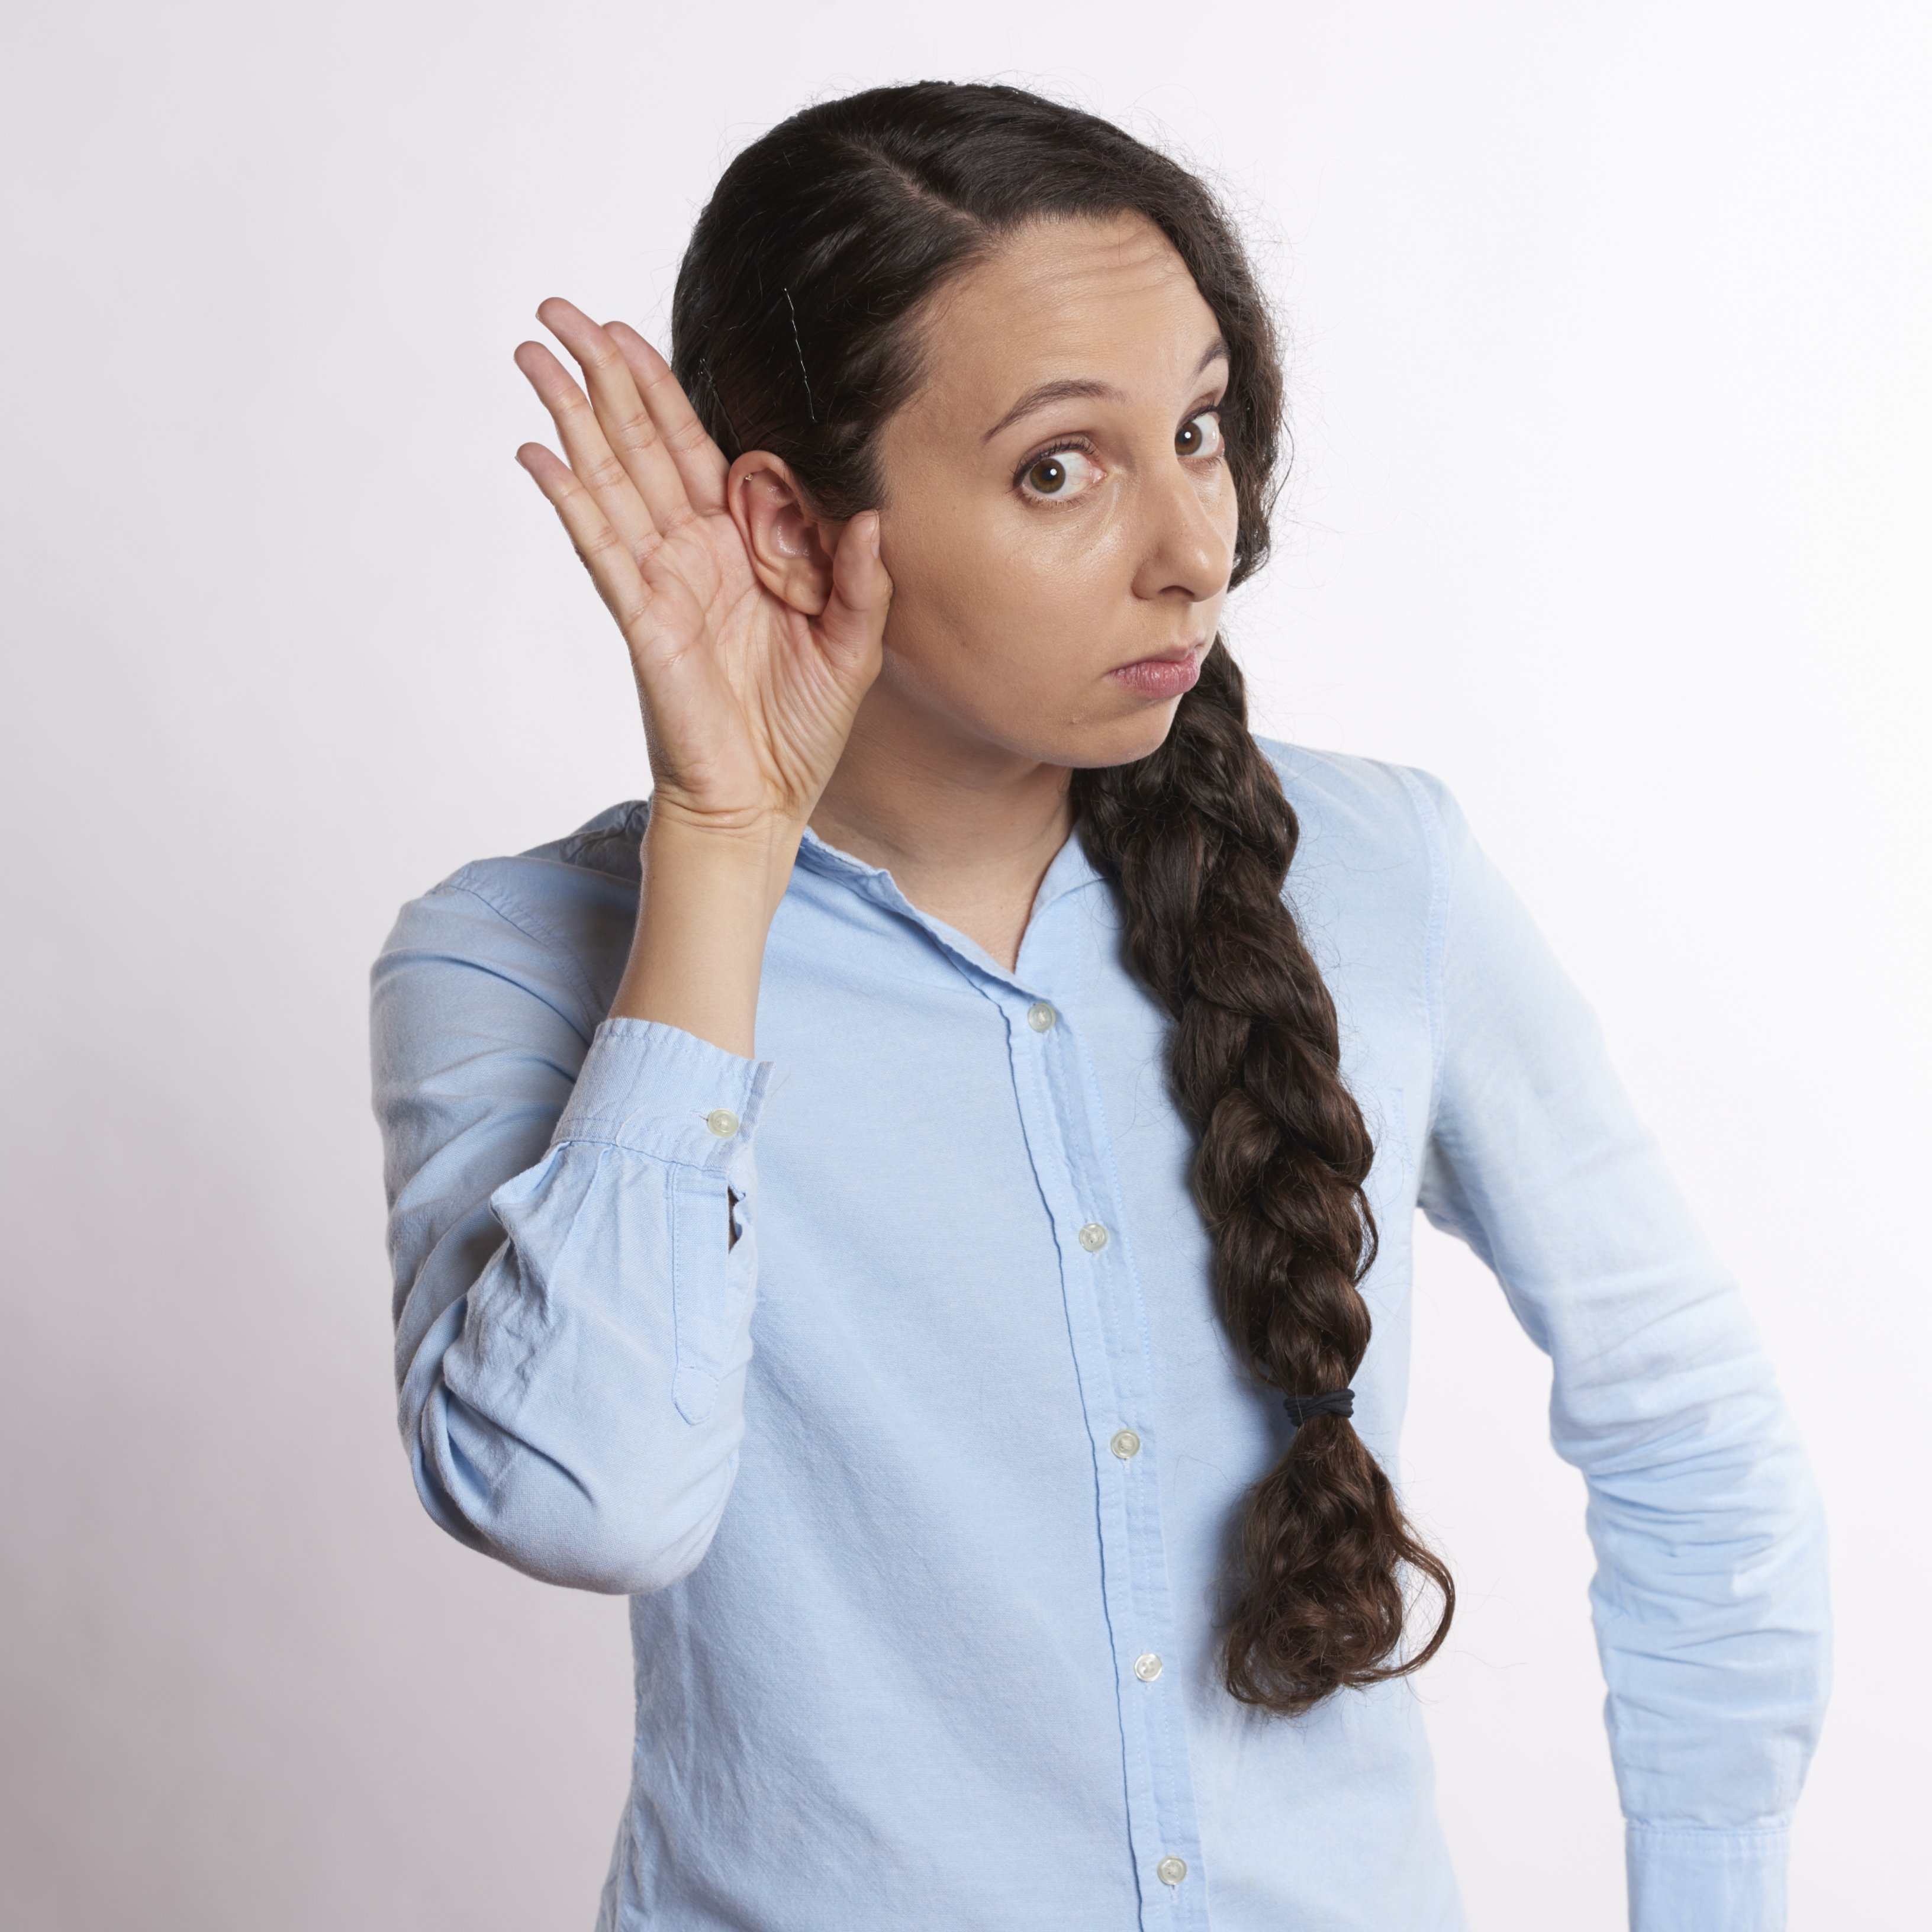 Consells per ajudar a prevenir la pèrdua auditiva